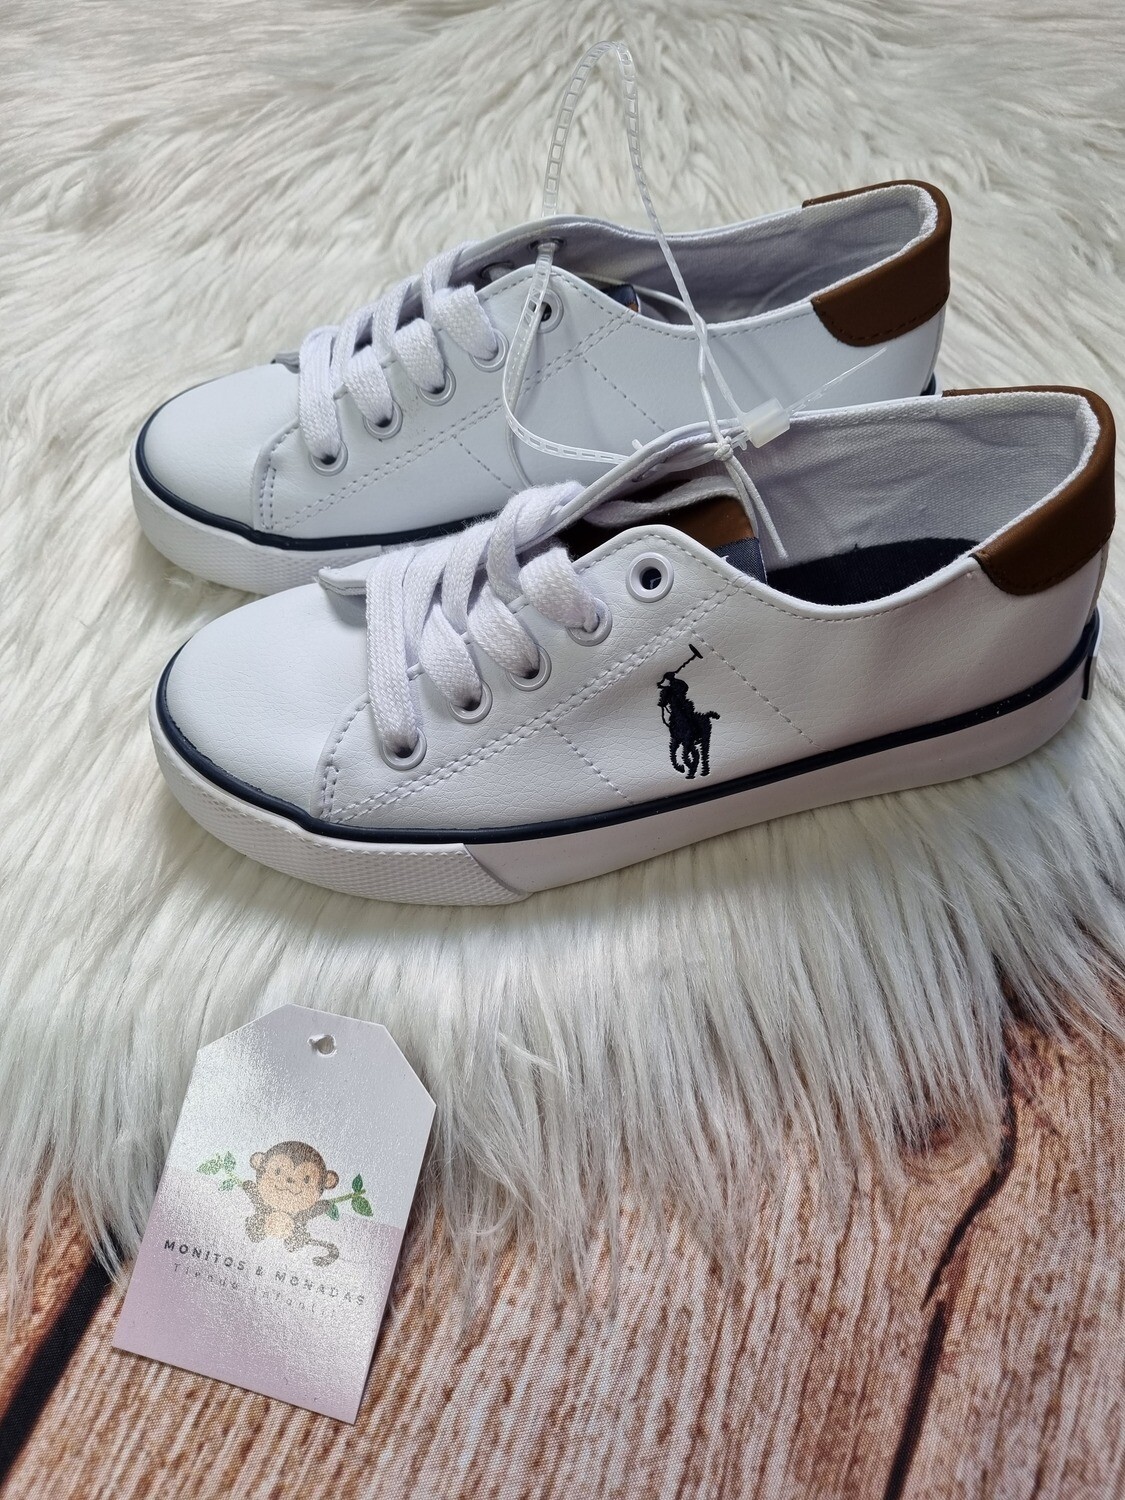 Zapatos blancos, deportivo - casual, Polo Ralph Lauren, talla 11us